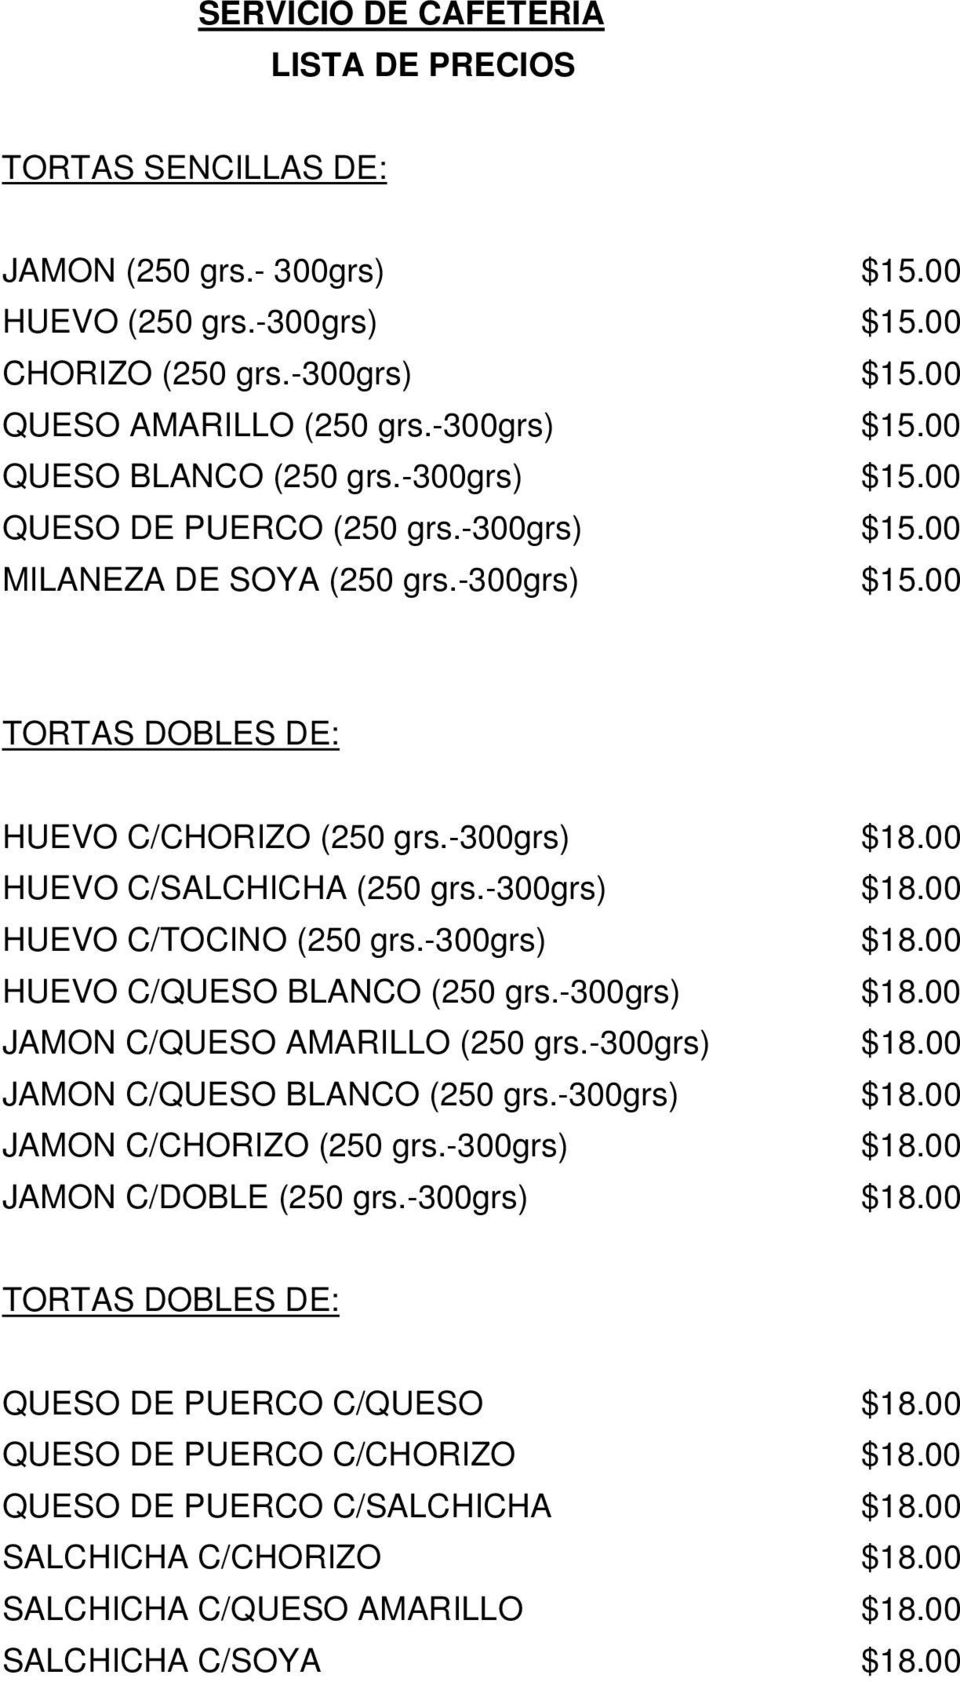 -300grs) $18.00 JAMON C/QUESO AMARILLO (250 grs.-300grs) $18.00 JAMON C/QUESO BLANCO (250 grs.-300grs) $18.00 JAMON C/CHORIZO (250 grs.-300grs) $18.00 JAMON C/DOBLE (250 grs.-300grs) $18.00 TORTAS DOBLES DE: QUESO DE PUERCO C/QUESO $18.